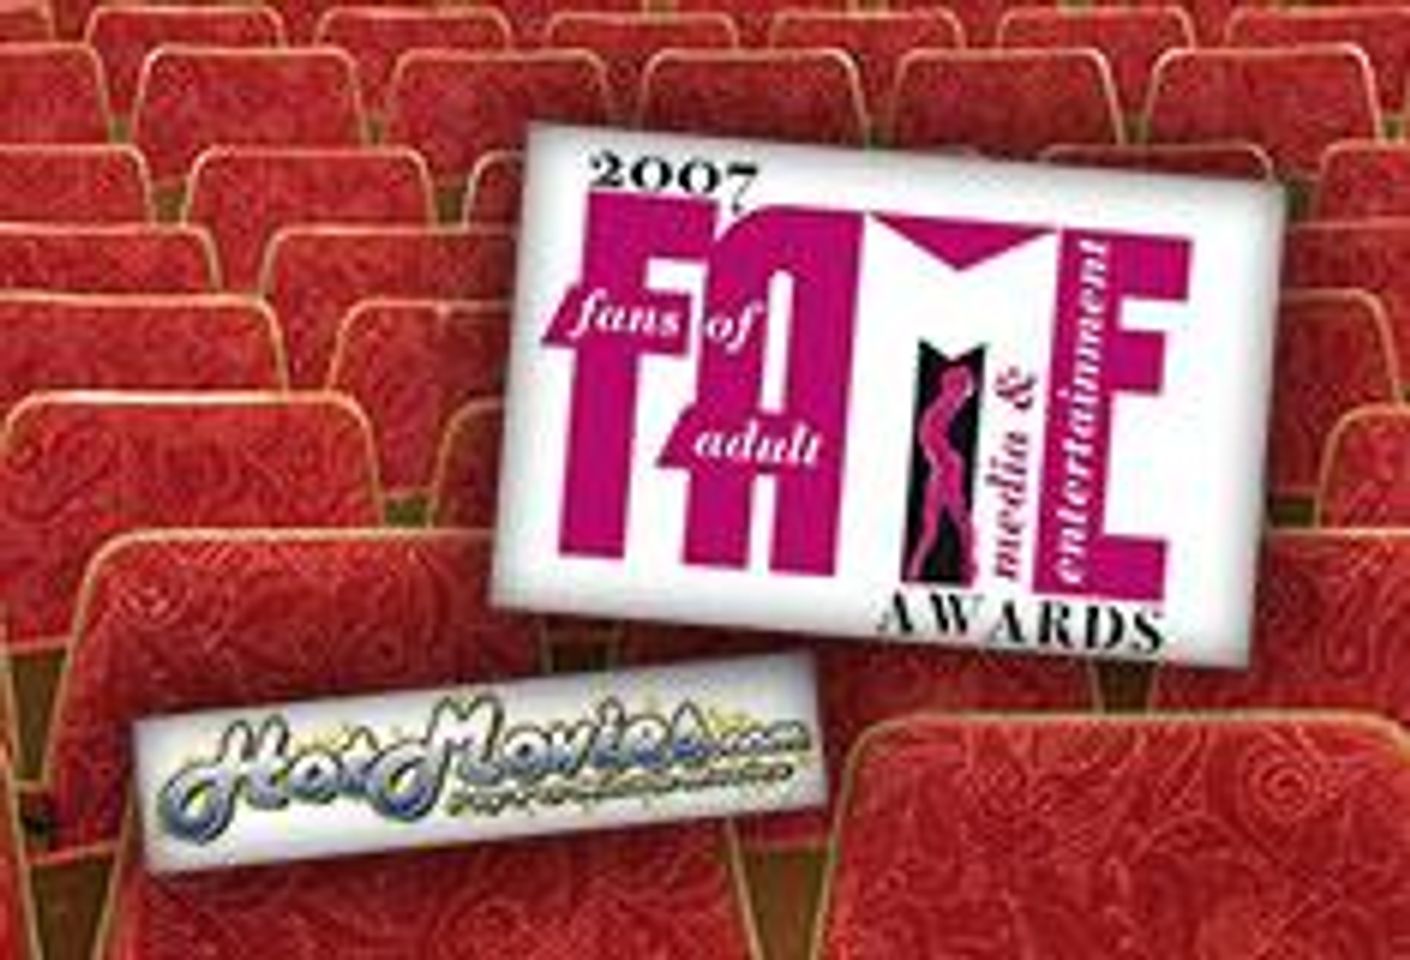 HotMovies.com Joins F.A.M.E. Awards